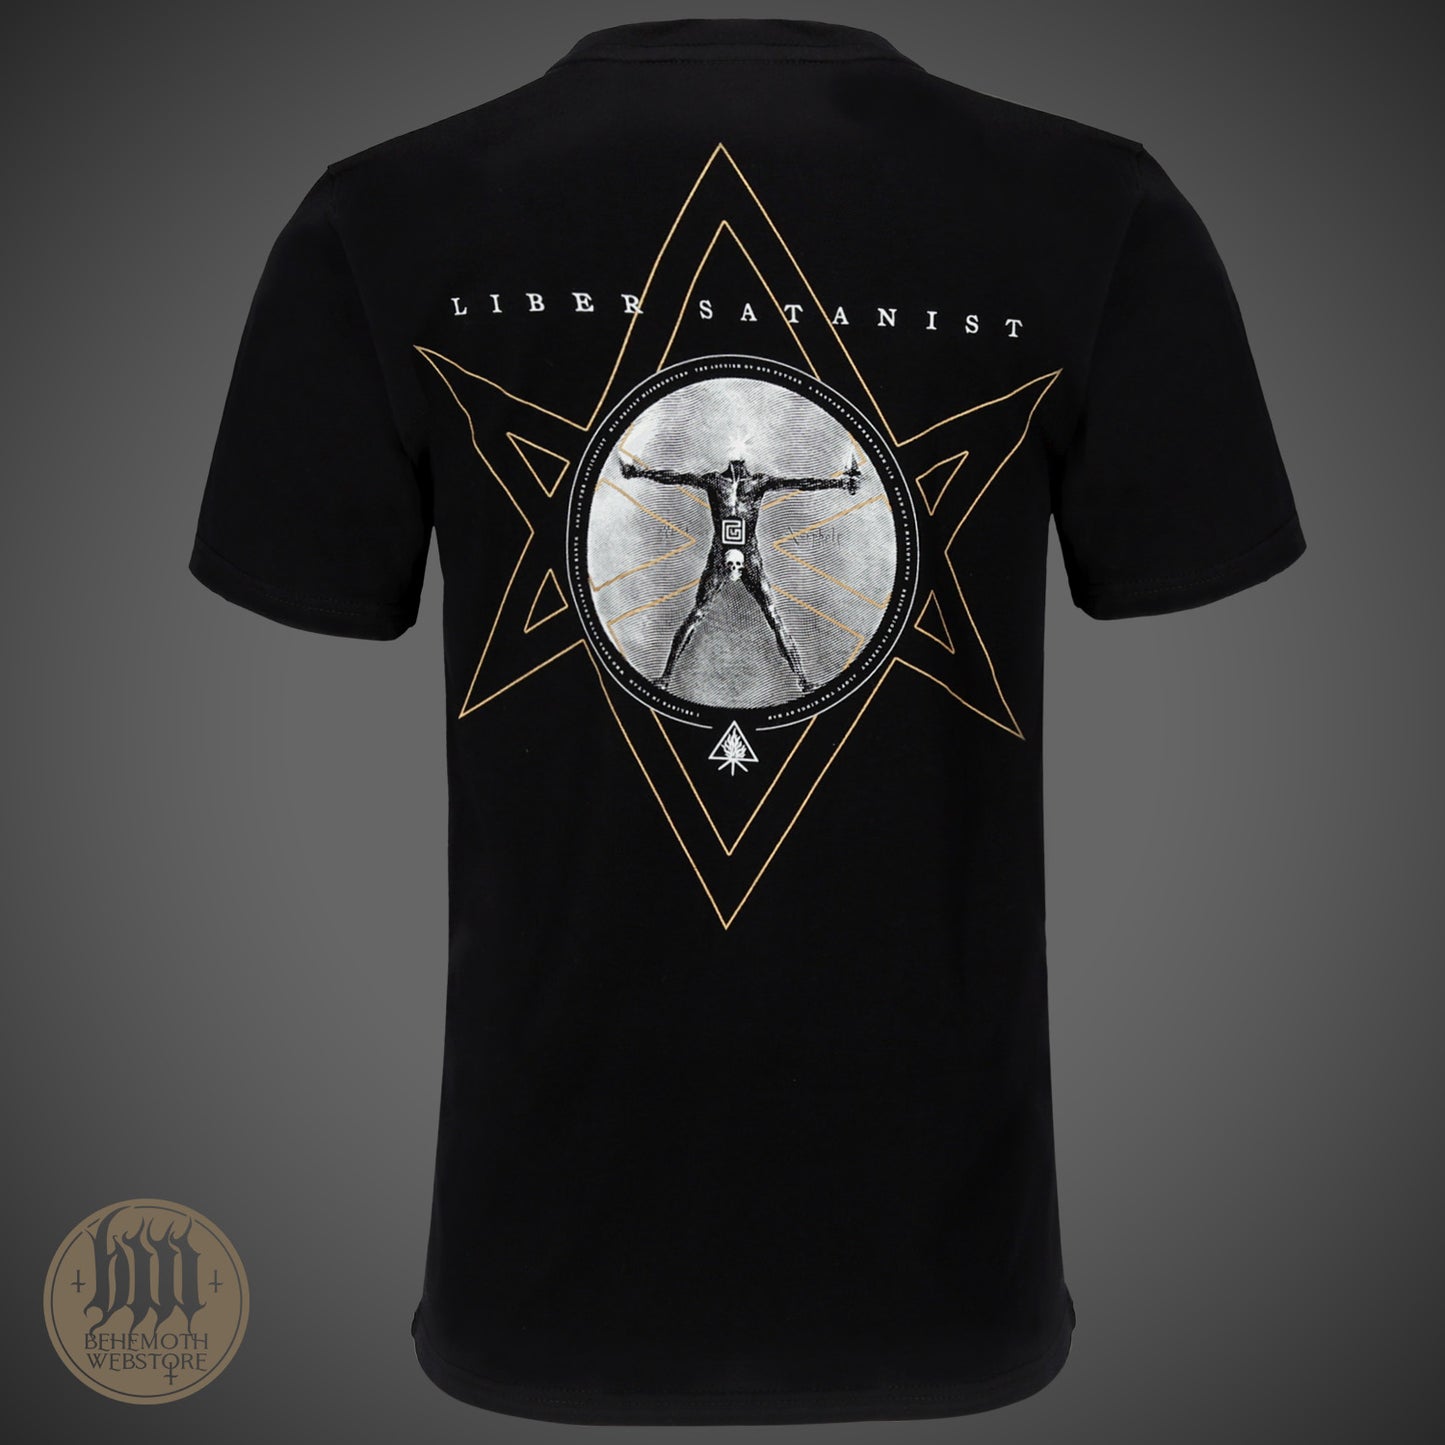 'The Satanist X' Behemoth T-Shirt